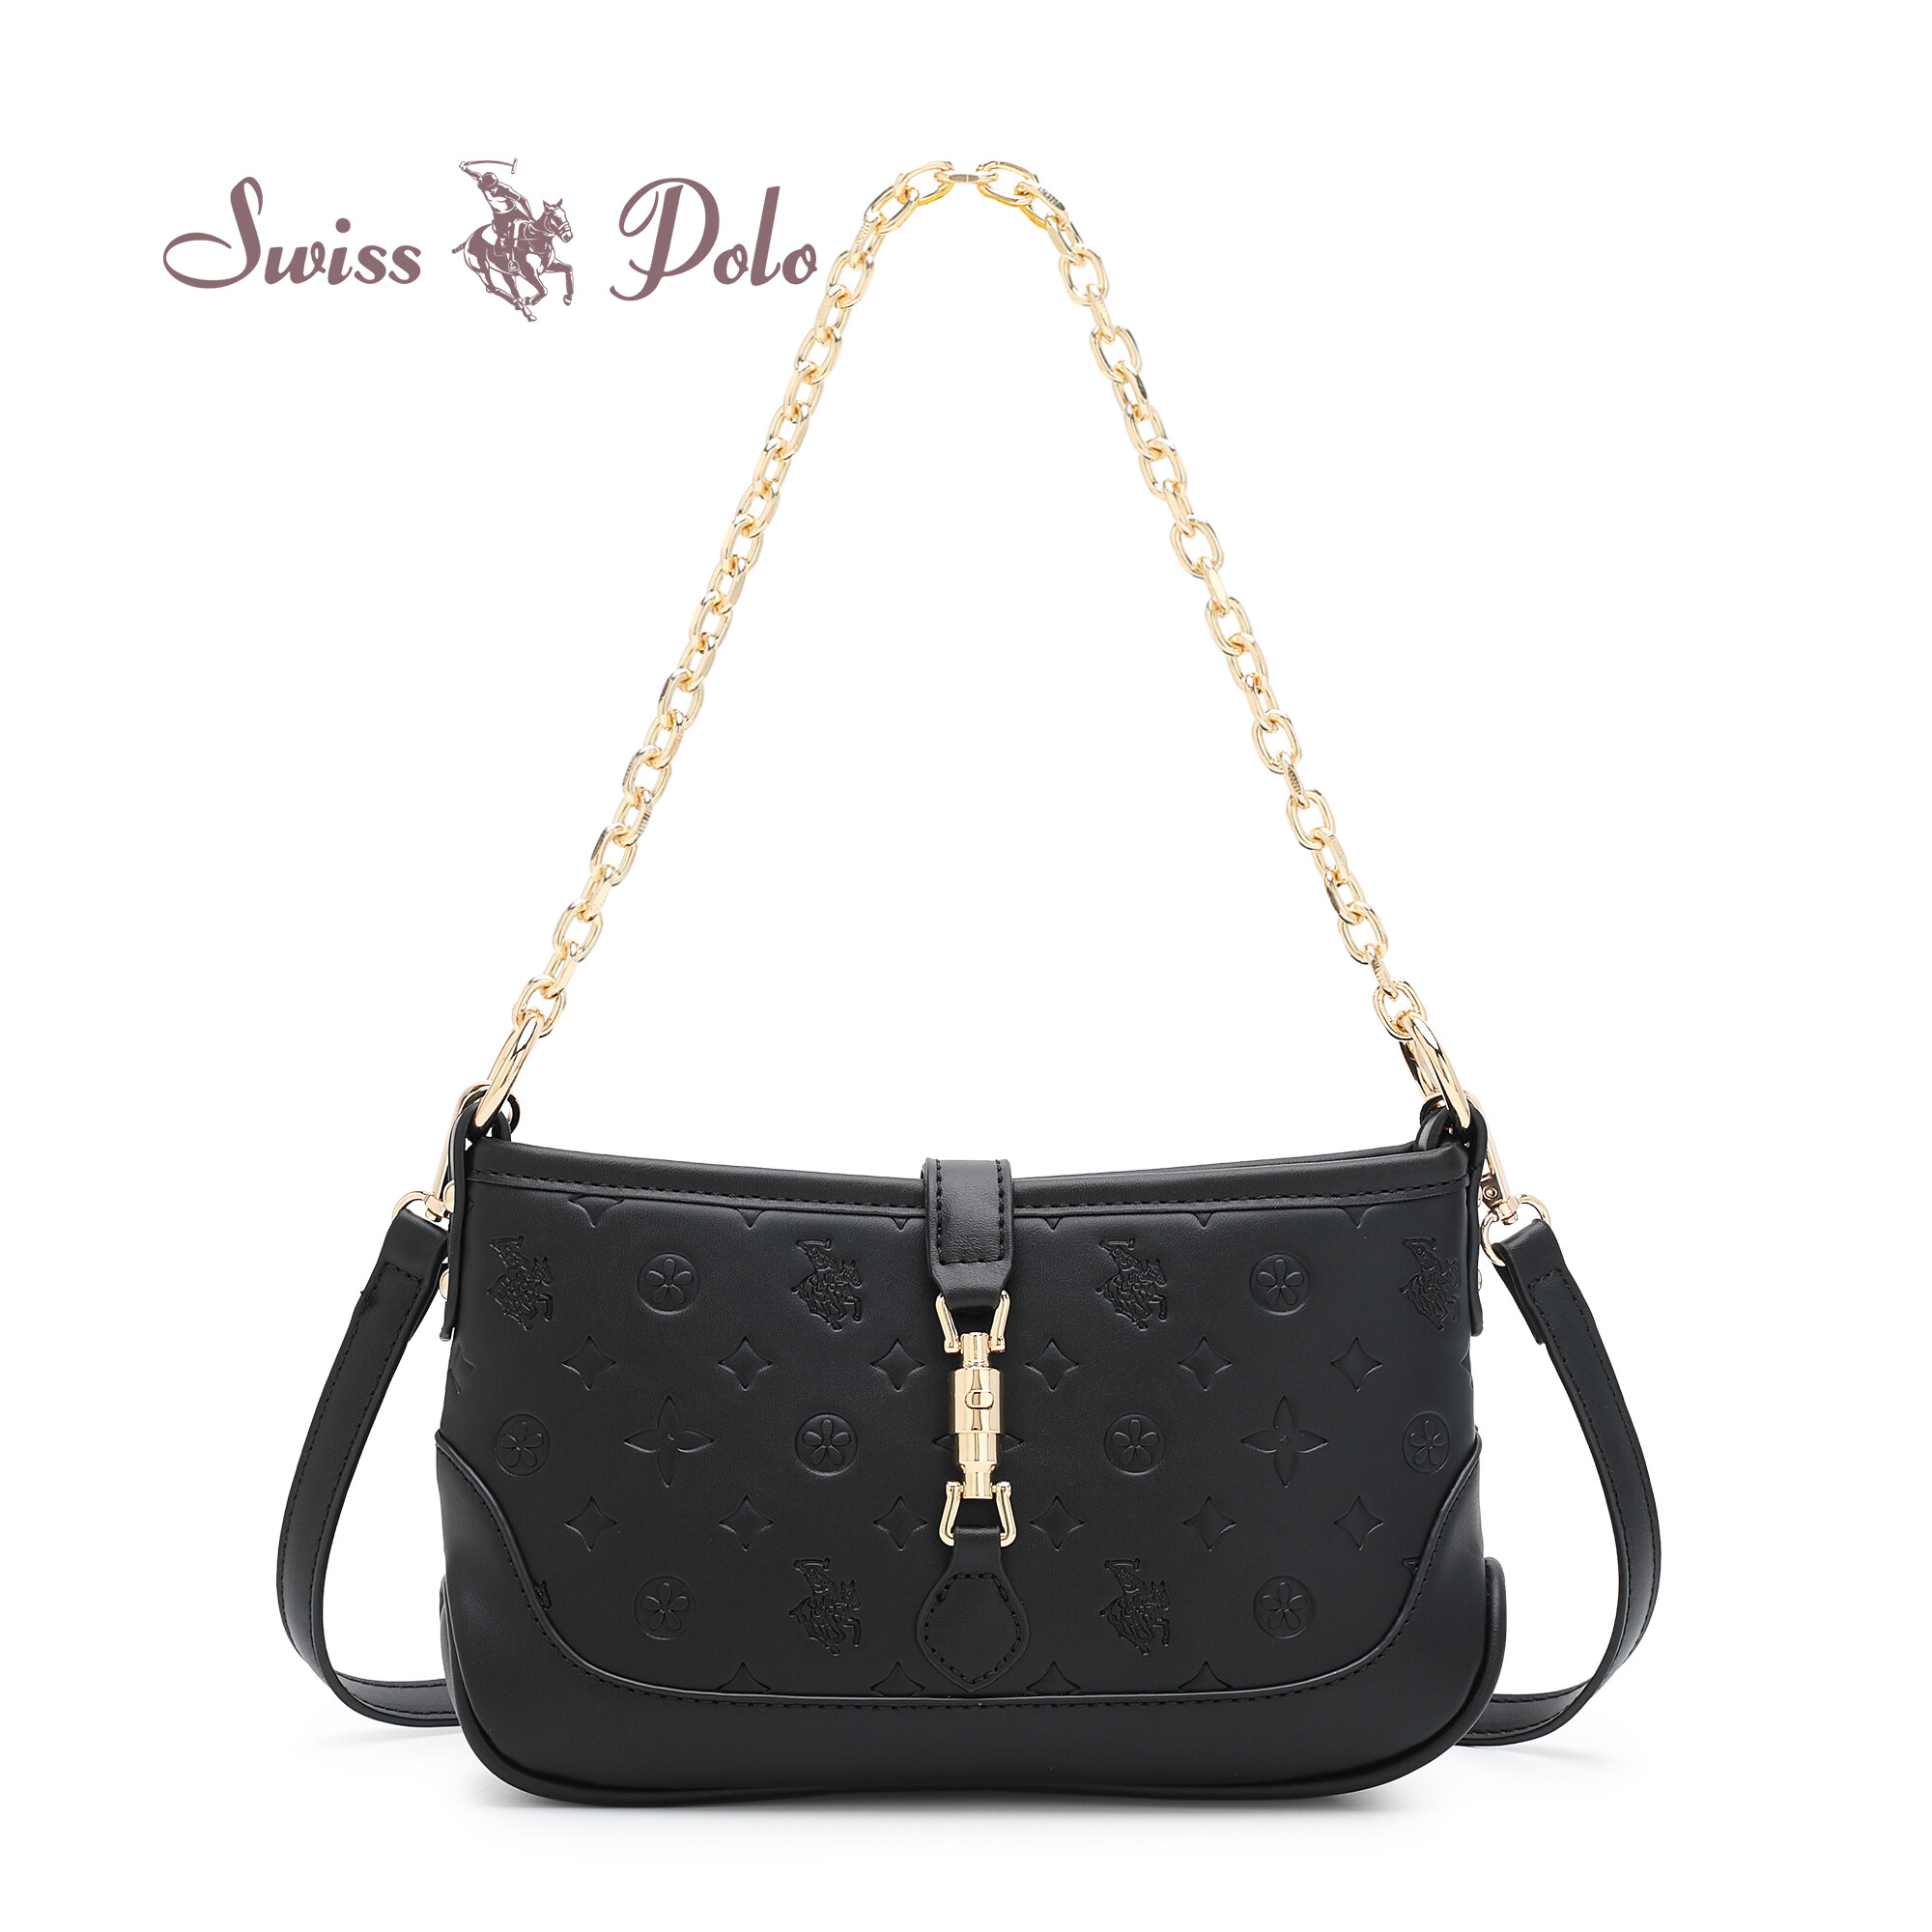 SWISS POLO Ladies Chain Sling Bag HGX 7822-1 BLACK